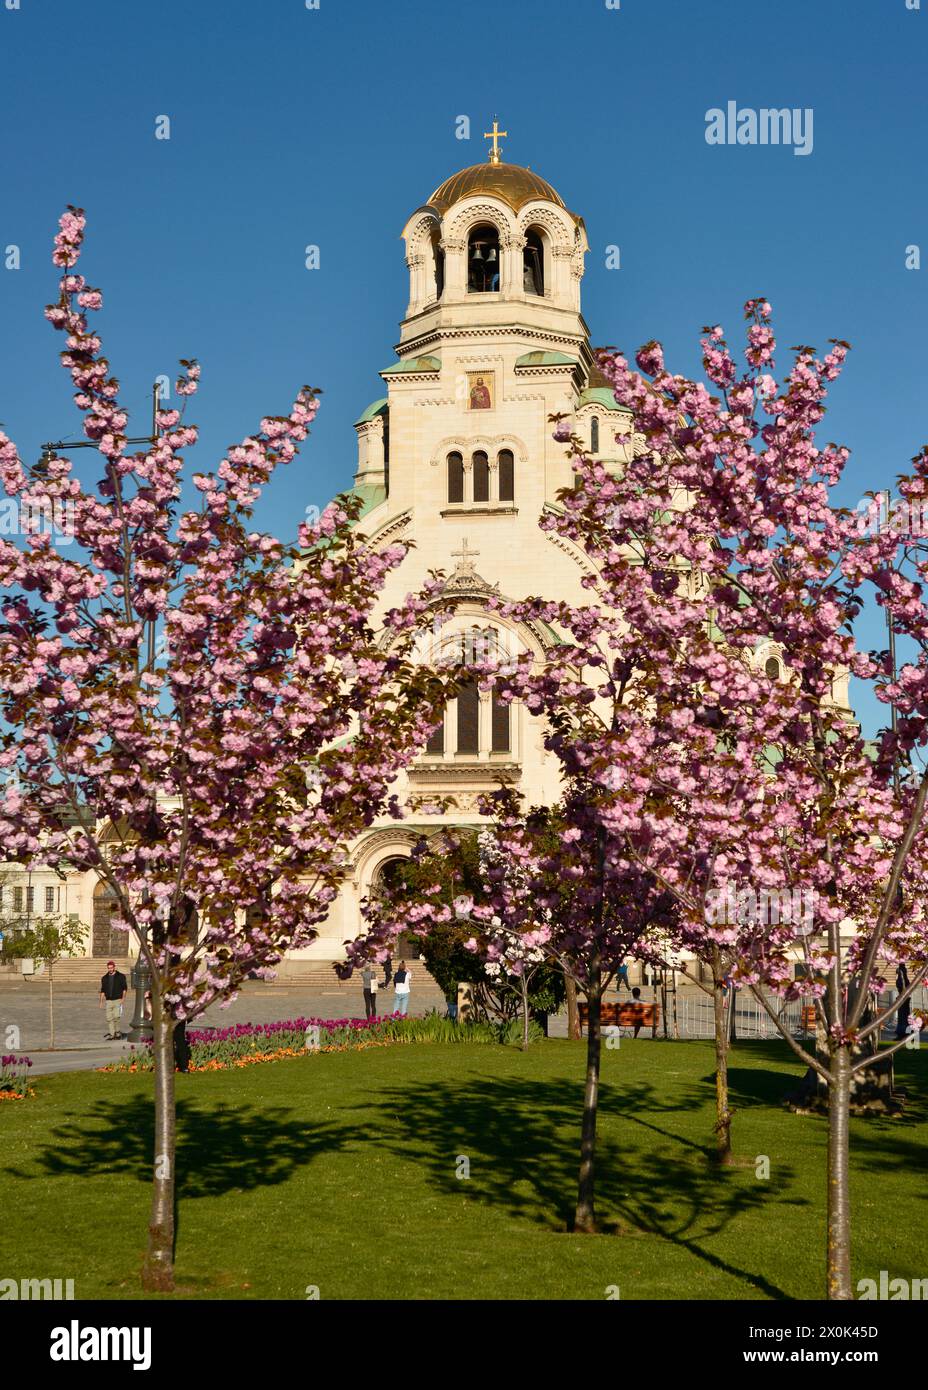 St Cattedrale ortodossa Alexander Nevsky vista attraverso gli alberi di ciliegio sakura in fiore a Sofia in Bulgaria. Europa orientale, Balcani, UE Foto Stock